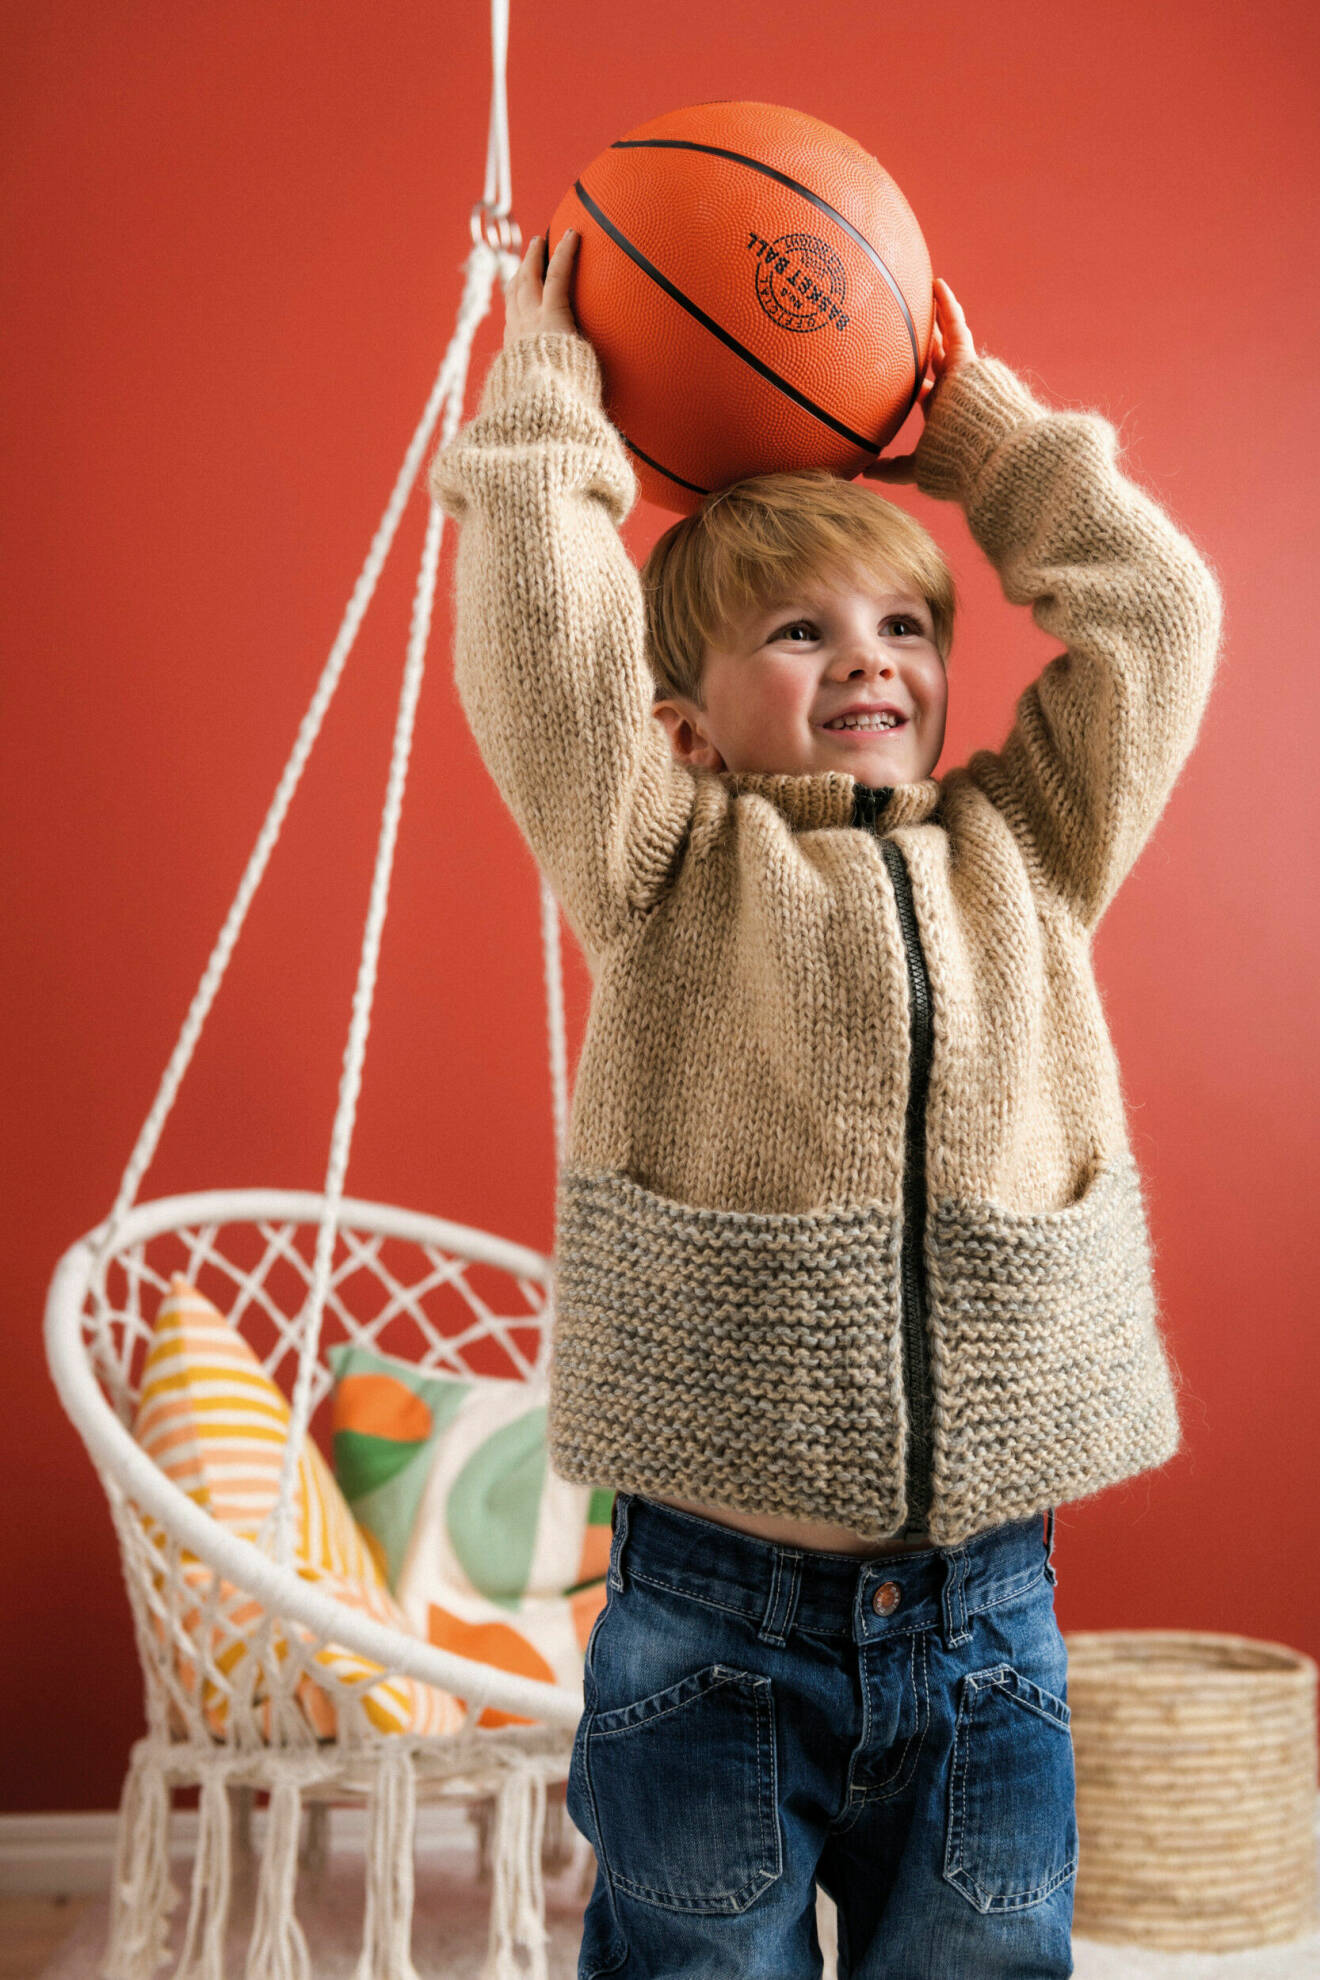 Pojke har på sig en beige stickad tröja och håller i en basketboll med armarna uppsträckta över huvudet.